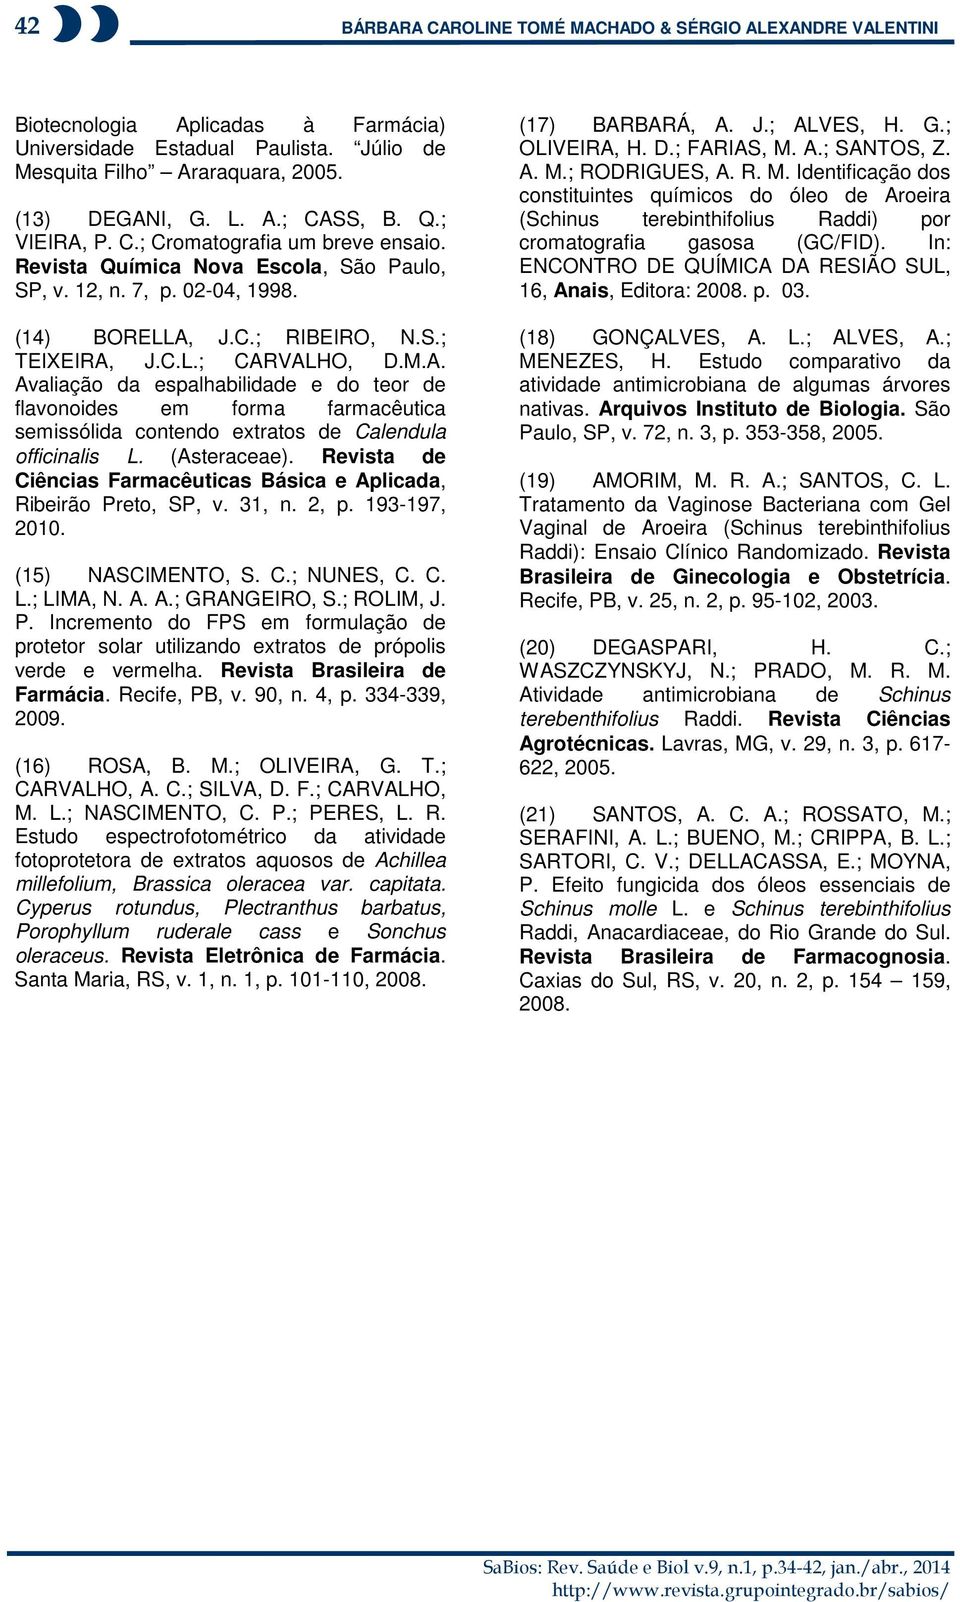 (Asteraceae). Revista de Ciências Farmacêuticas Básica e Aplicada, Ribeirão Preto, SP, v. 31, n. 2, p. 193-197, 2010. (15) NASCIMENTO, S. C.; NUNES, C. C. L.; LIMA, N. A. A.; GRANGEIRO, S.; ROLIM, J.